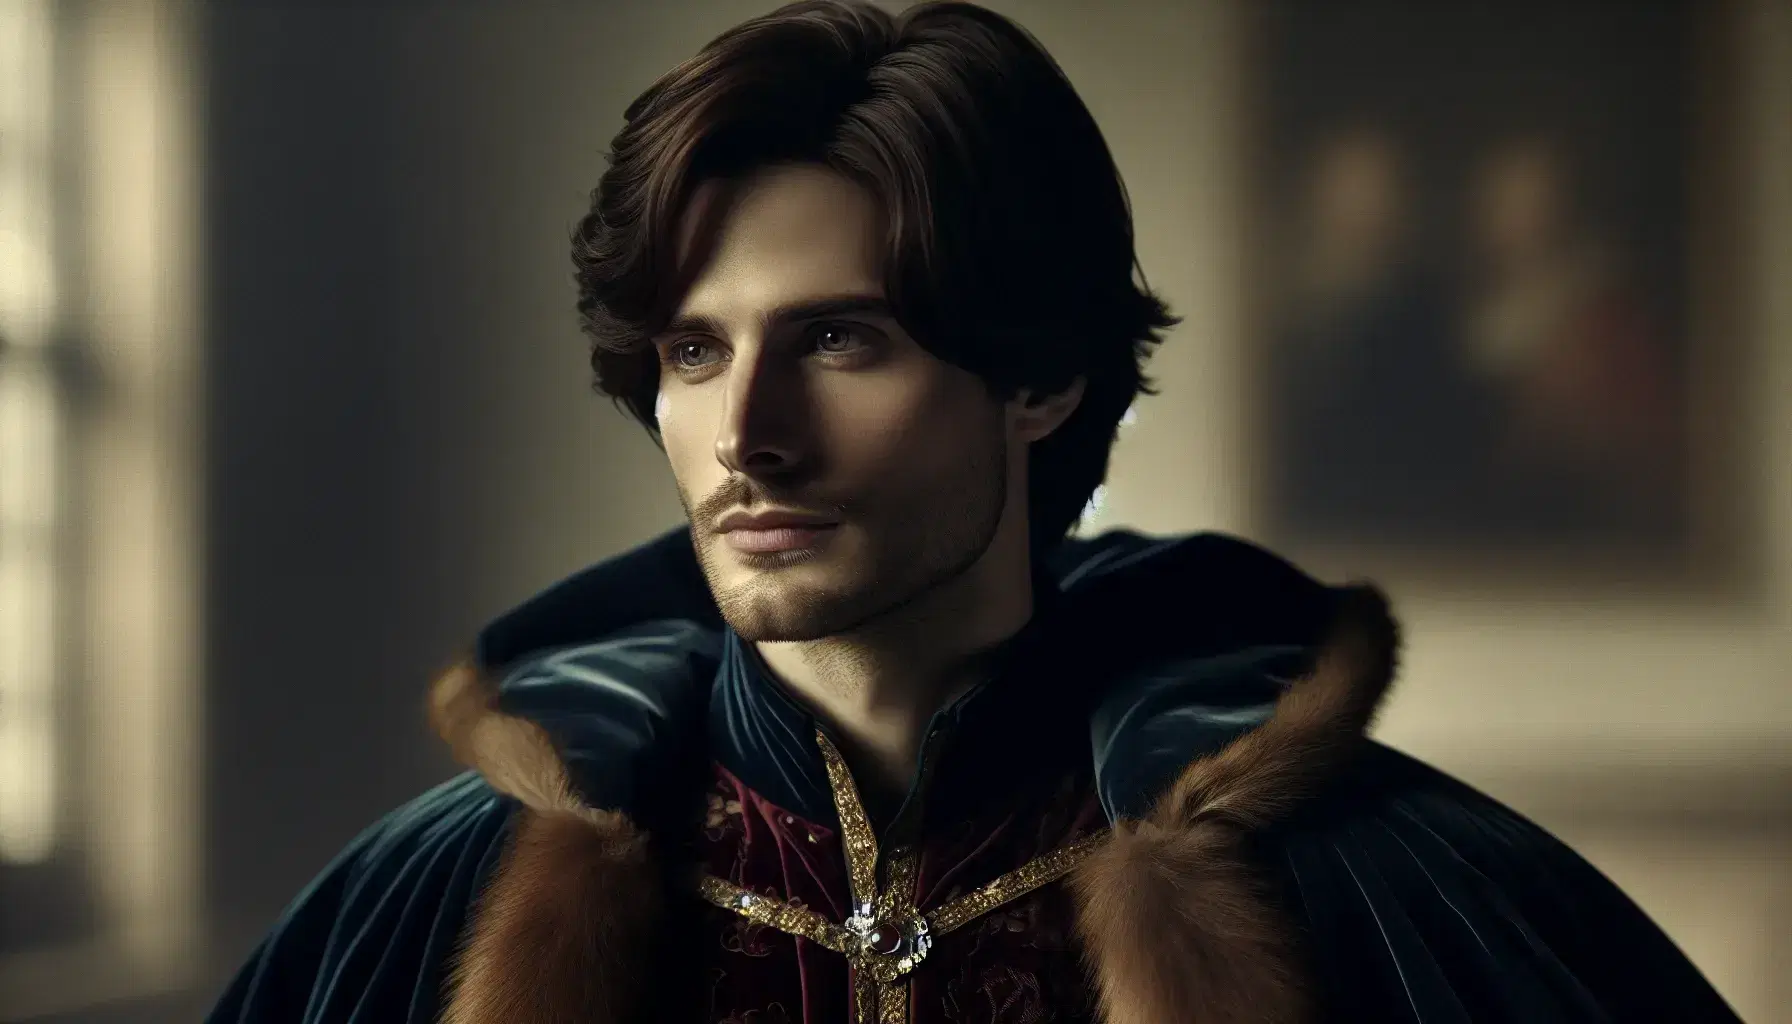 Ritratto di uomo medievale nobile con mantello blu velluto, bordato di pelliccia e tunica rossa con dettagli dorati, sguardo serio e pensieroso.